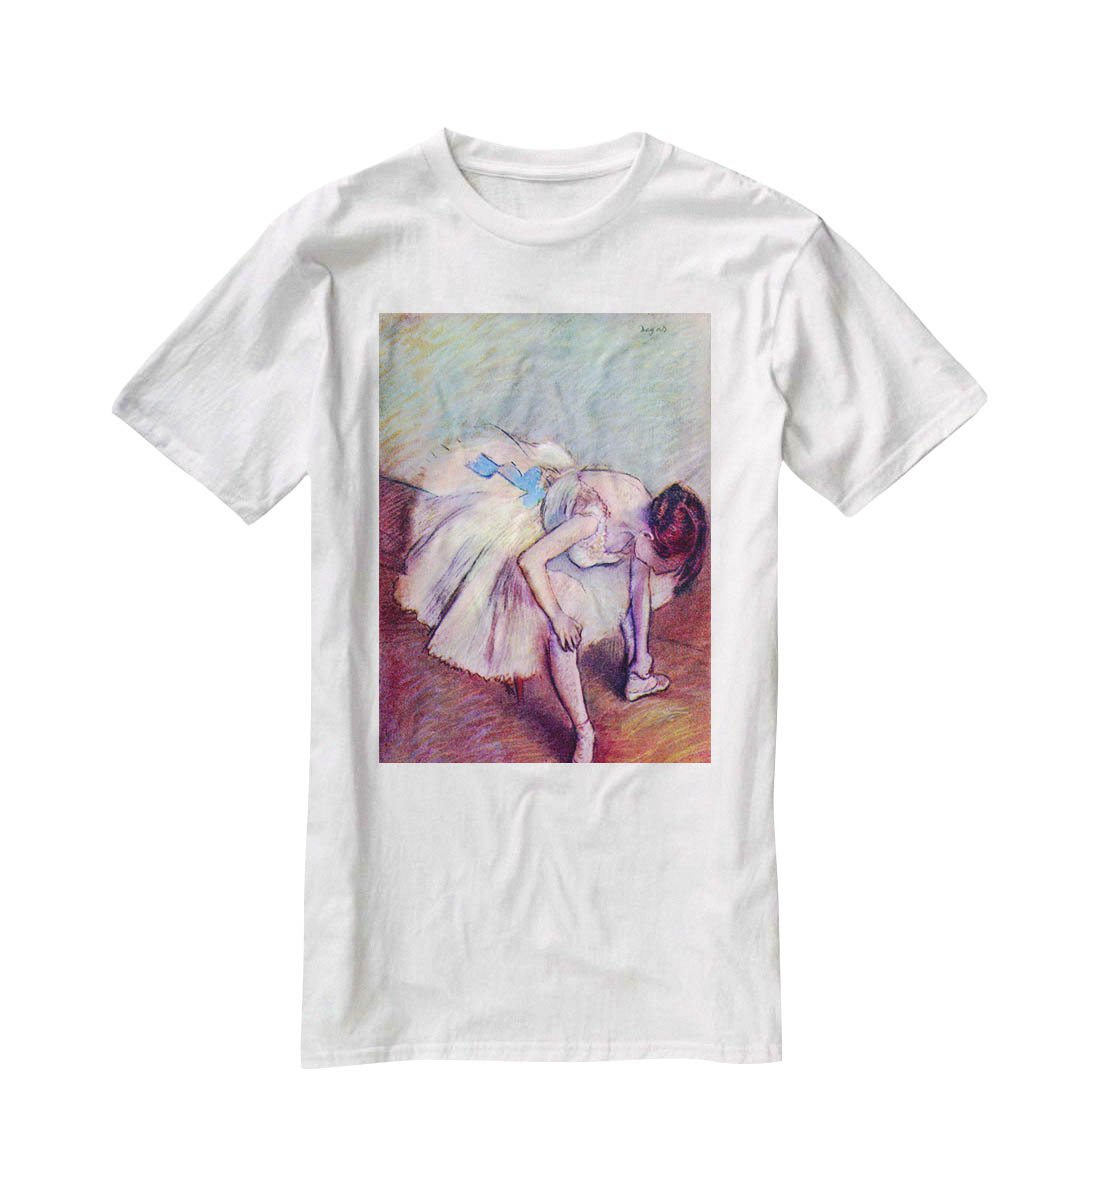 Dancer 2 by Degas T-Shirt - Canvas Art Rocks - 5